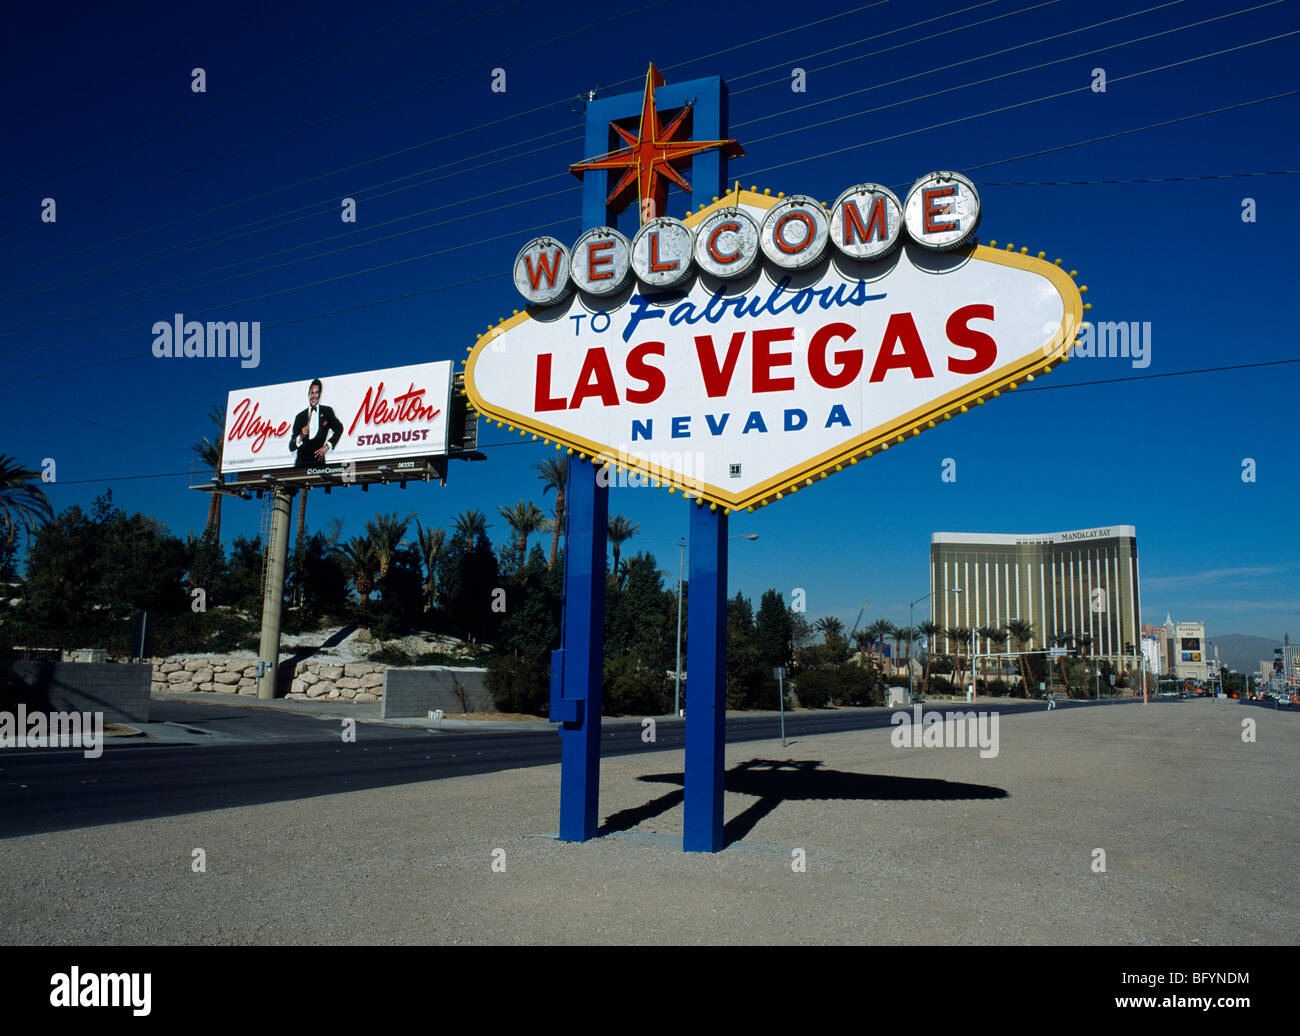 Stati Uniti d'America, Nevada, Las Vegas Strip, Benvenuto nella favolosa Las Vegas segno con Wayne Newton billboard e Mandalay Bay Hotel dietro. Foto Stock